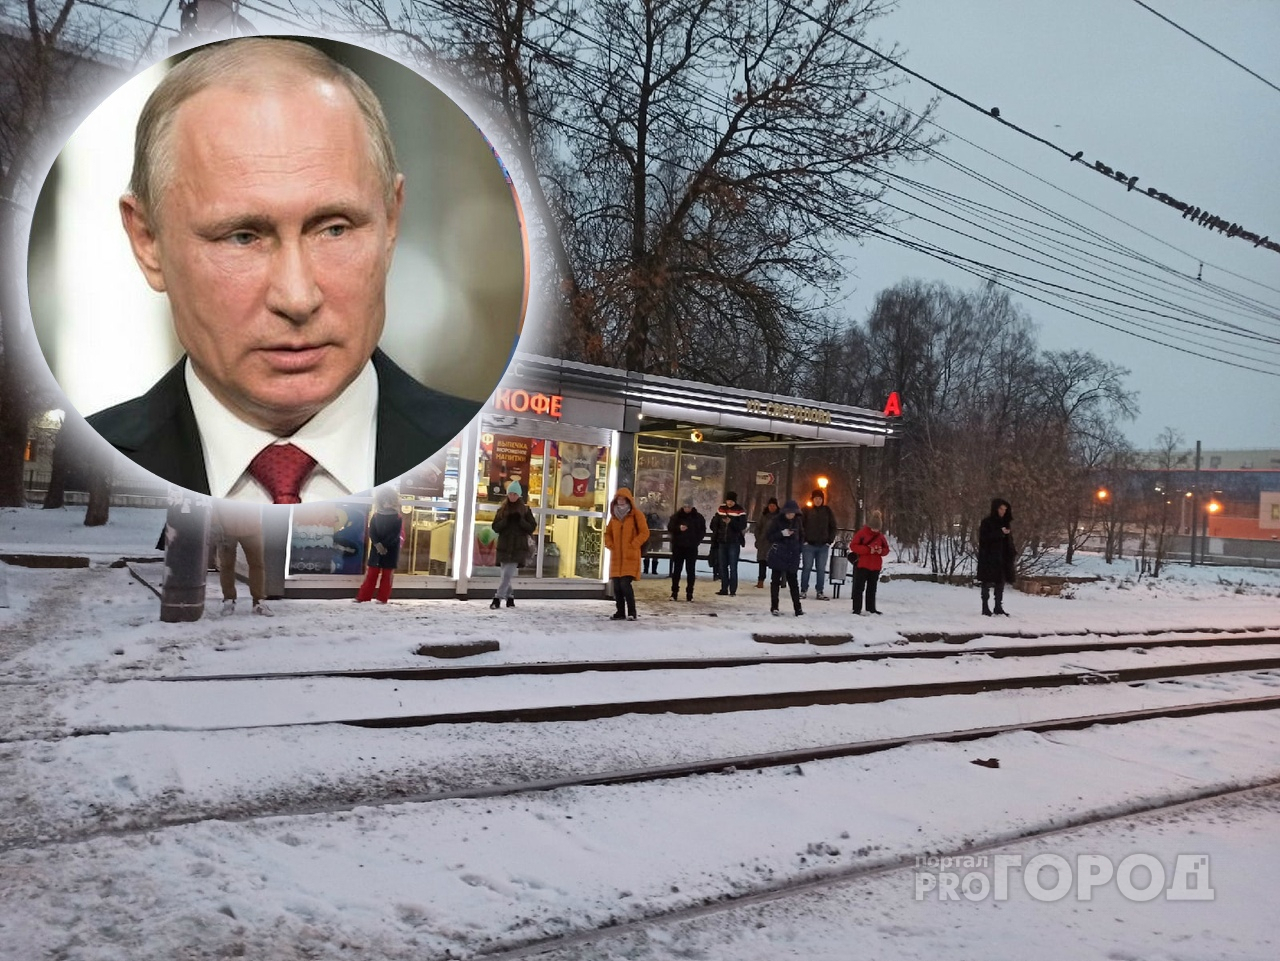 Путин сделал заявление о 31 декабря: работаем или нет